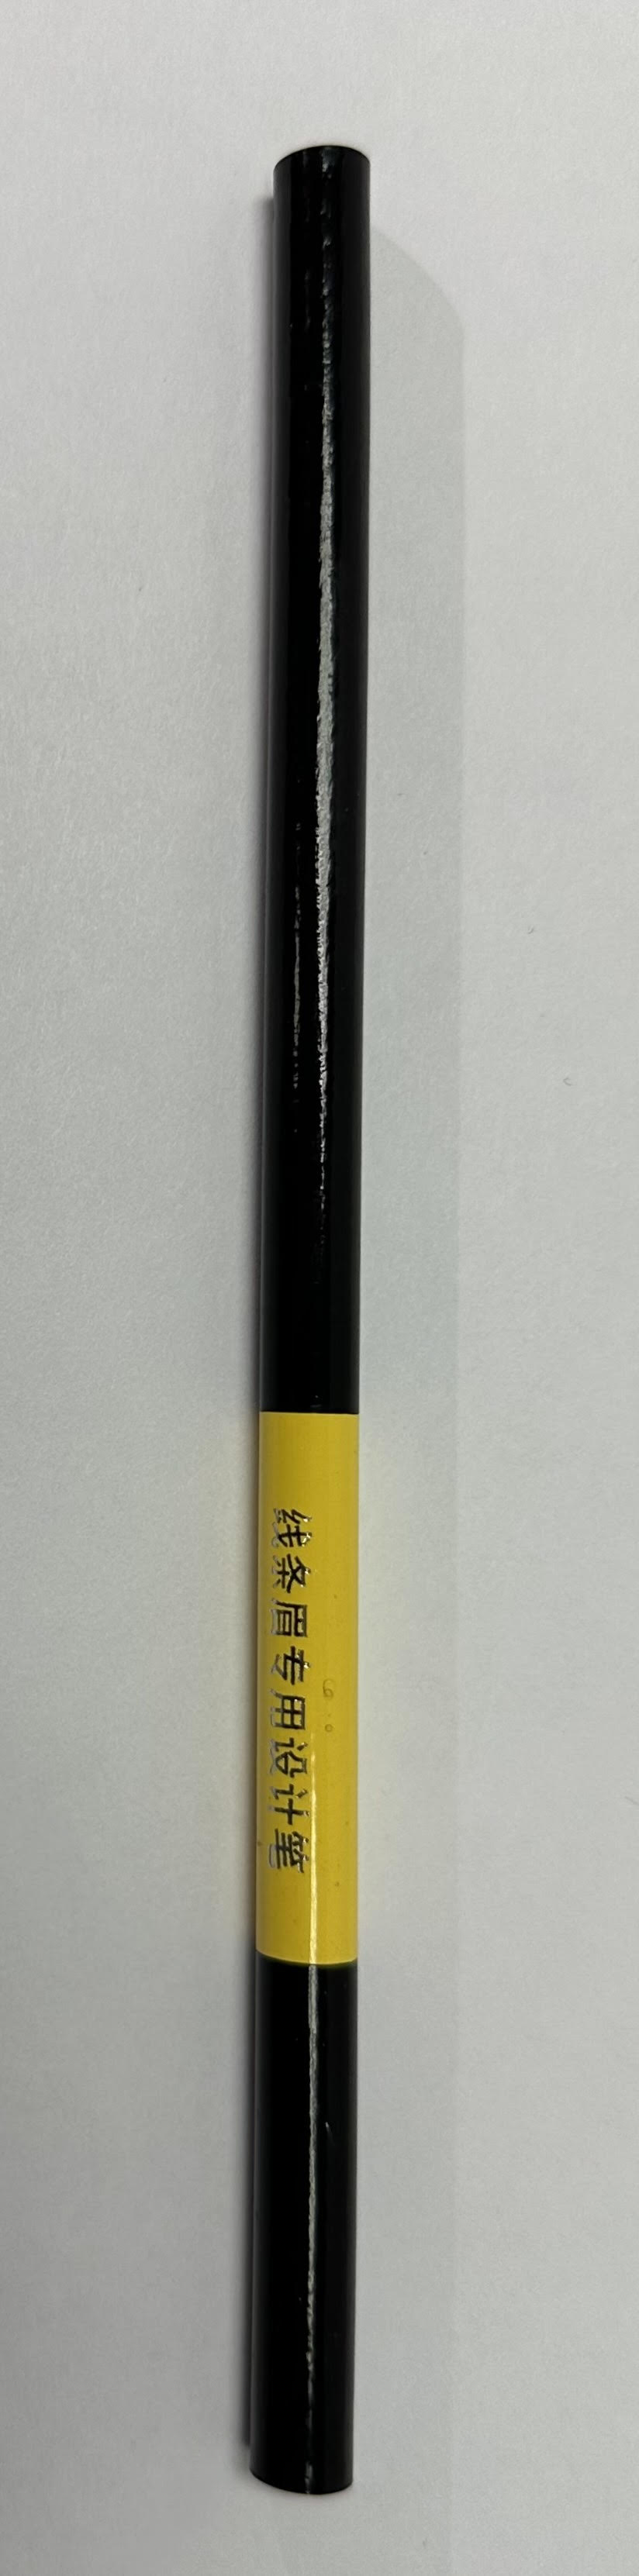 Eyebrow Hair Stroke Design Pencil